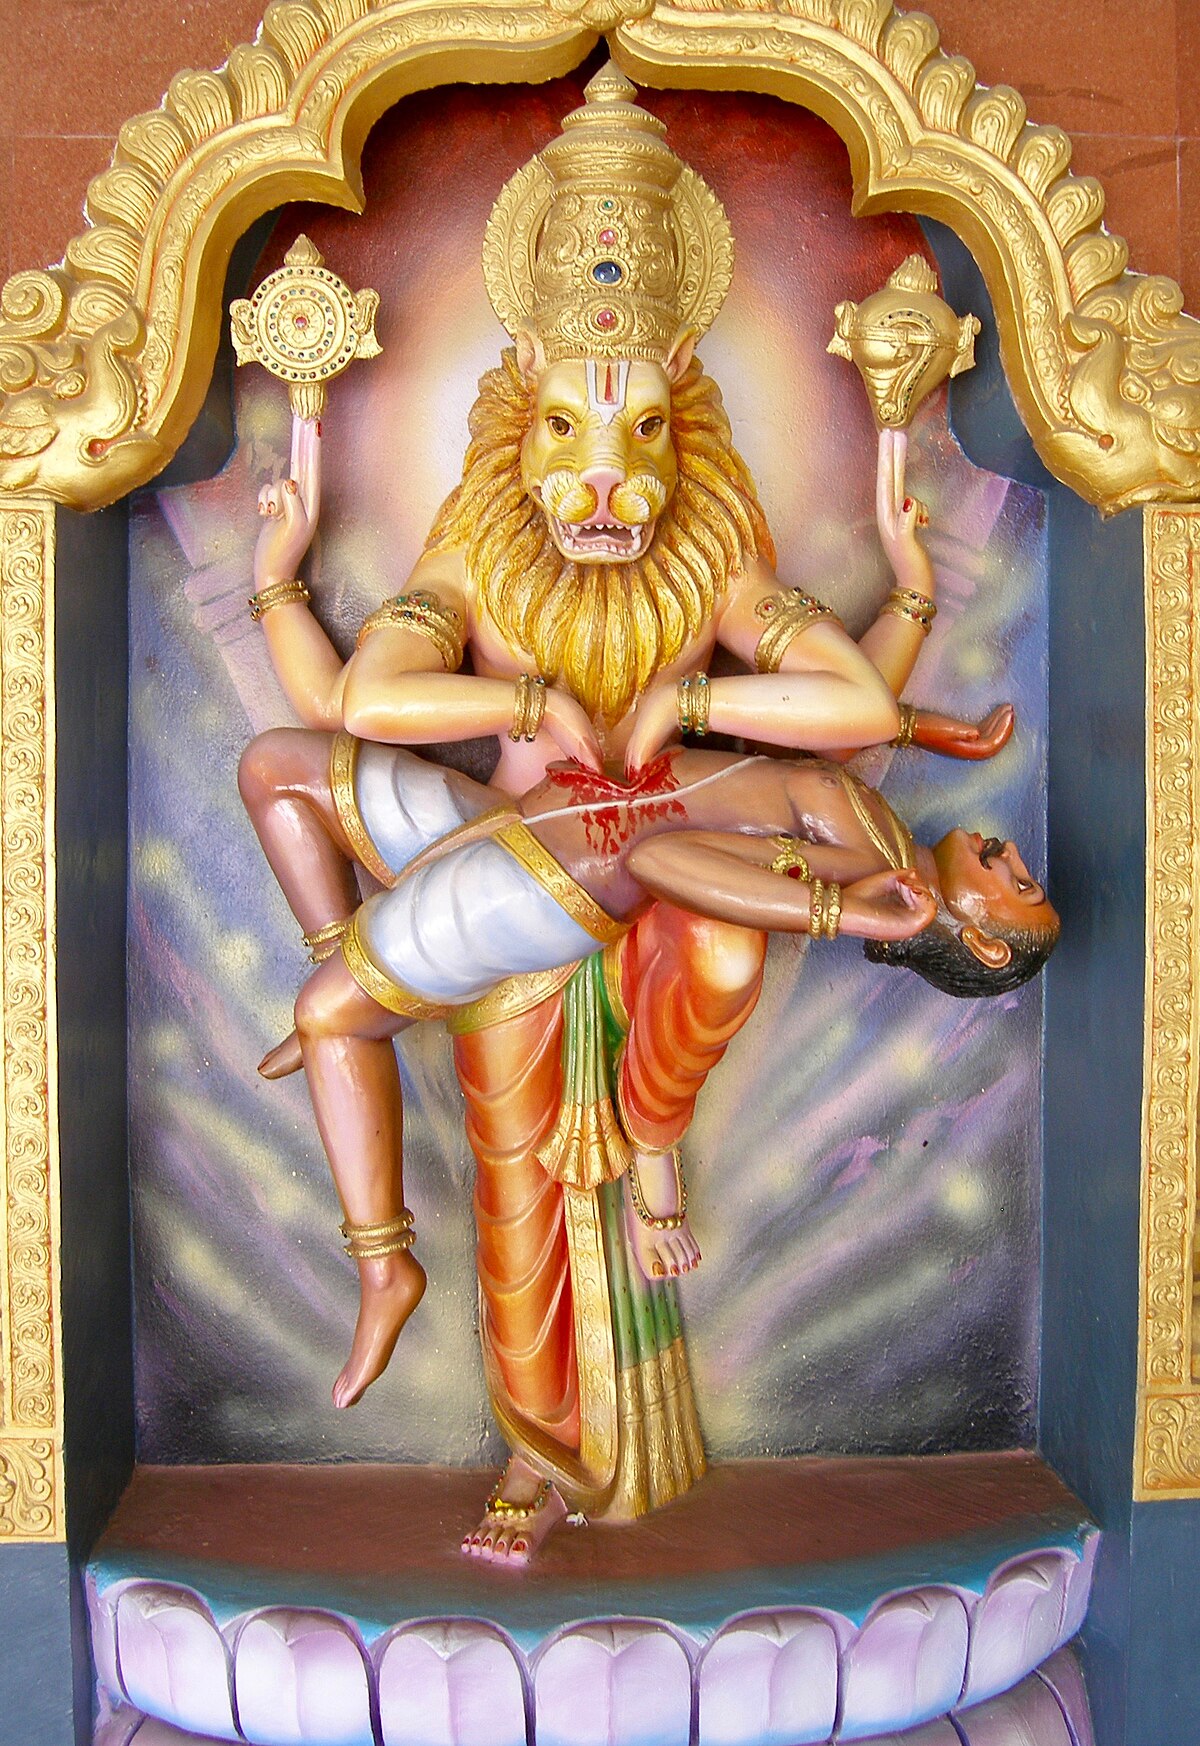 4th Avatar of Vishnu: Narasimha là avatar thứ 4 của Lord Vishnu. Avatar này đại diện cho sự trừng phạt và sự công bằng. Cùng khám phá về Narasimha và những câu chuyện liên quan đến người máy hổ trong các bức tranh và hình ảnh liên quan.